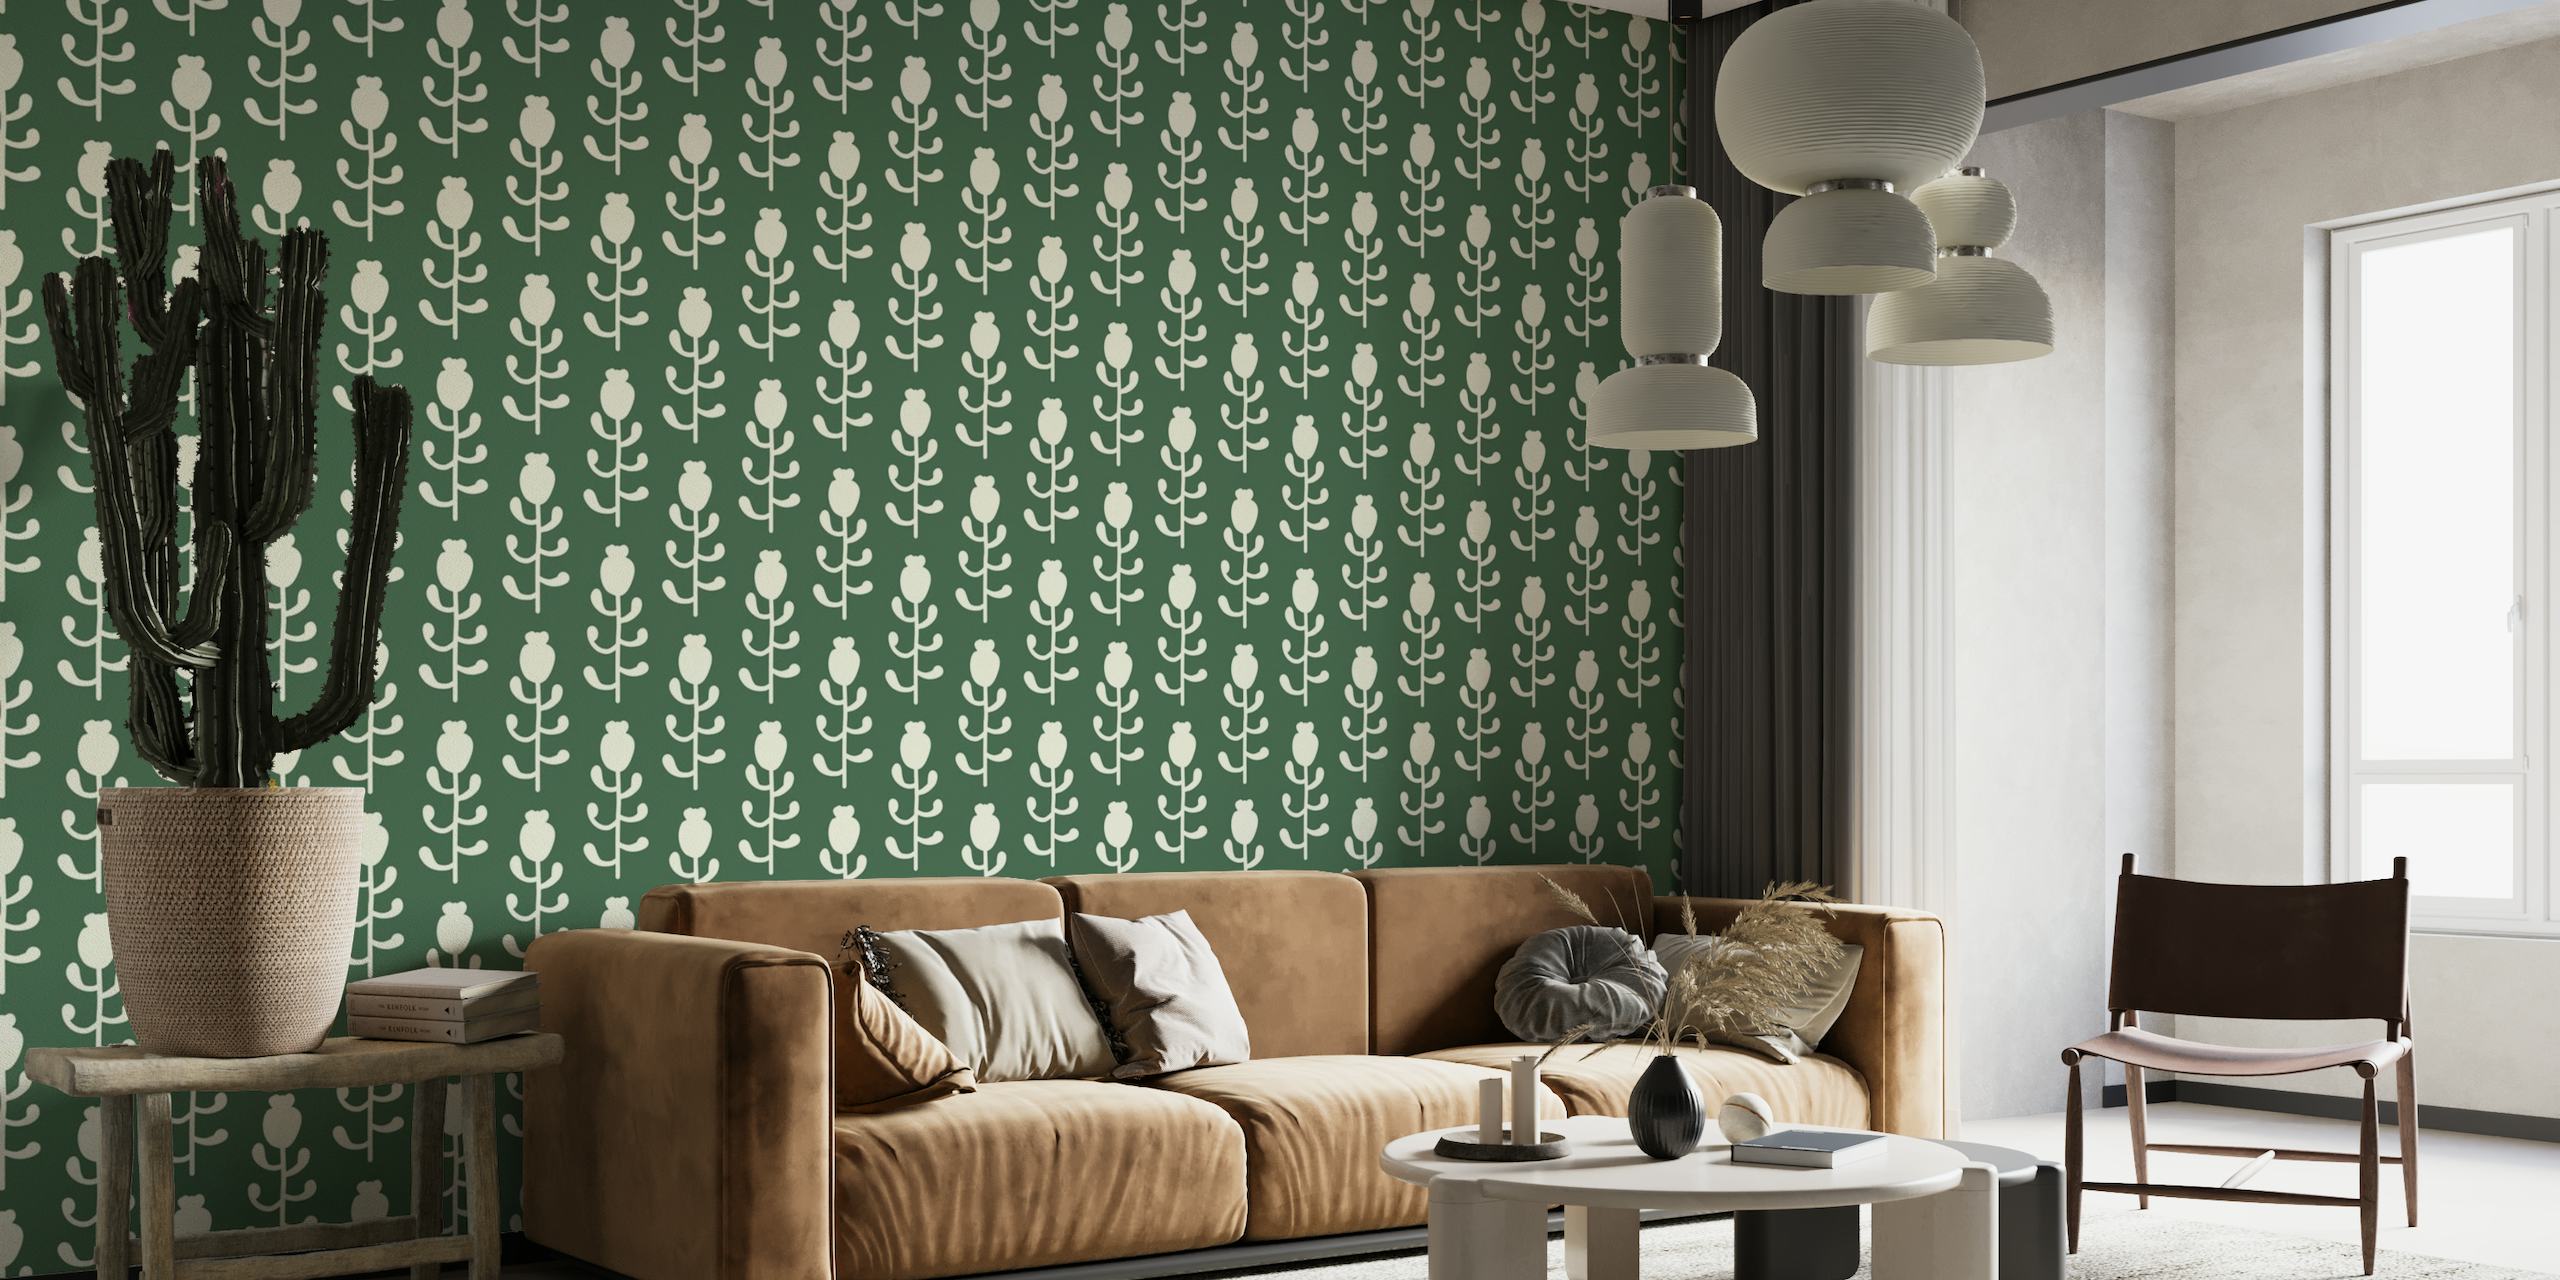 2570 - floral pattern, dark green papiers peint